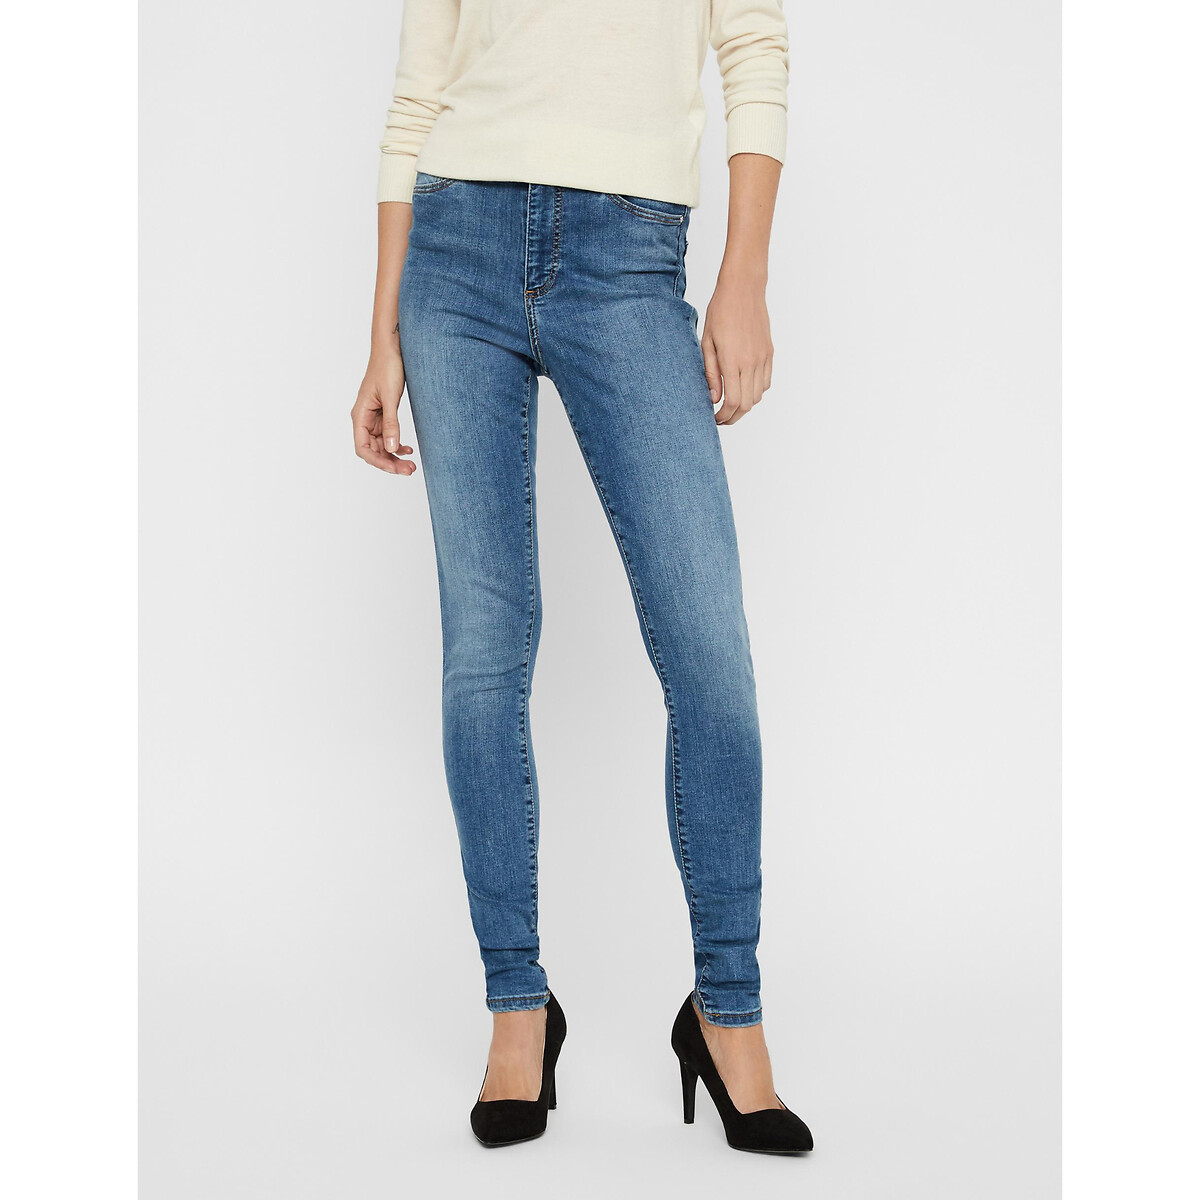 Skinny jeans met hoge taille in de sale-VERO MODA 1